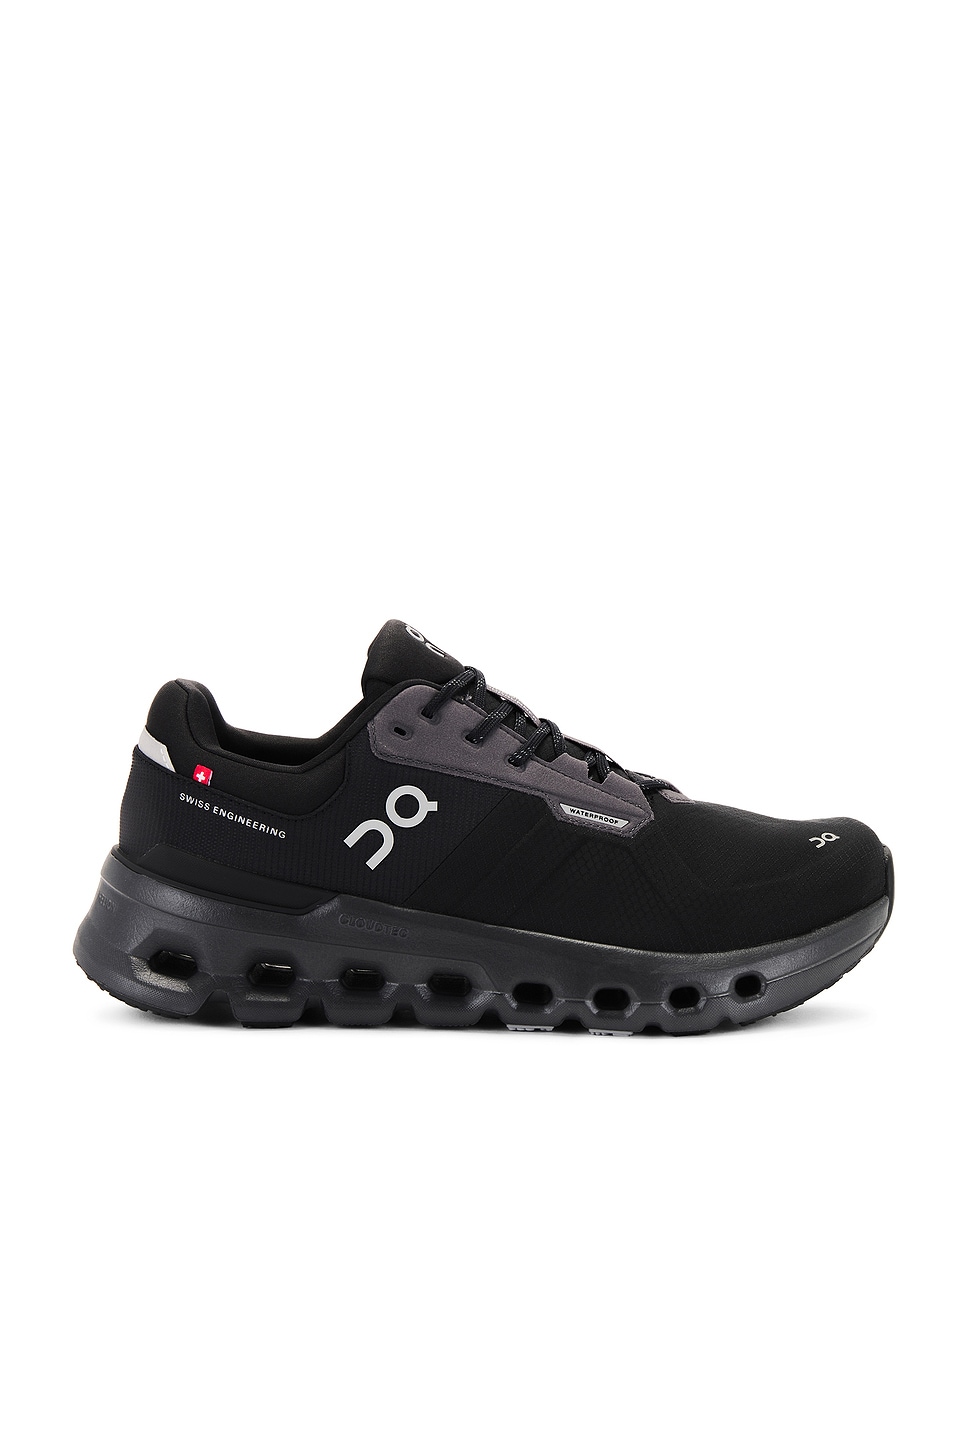 Image 1 of On Cloudrunner 2 Waterproof Sneaker in Magnet & Black